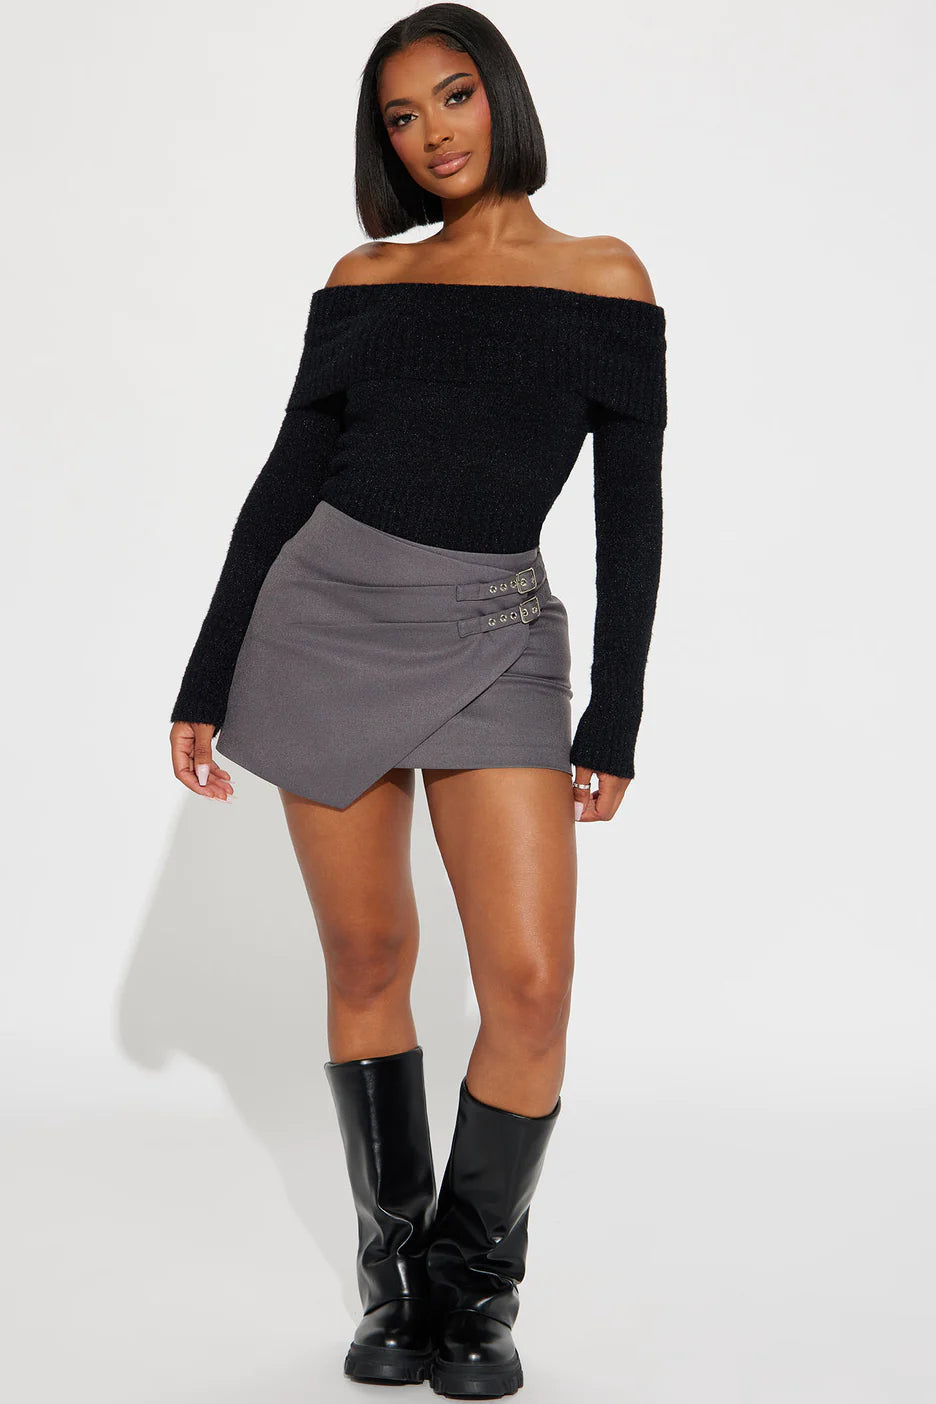 Fashionnova Aviana Mini Skirt